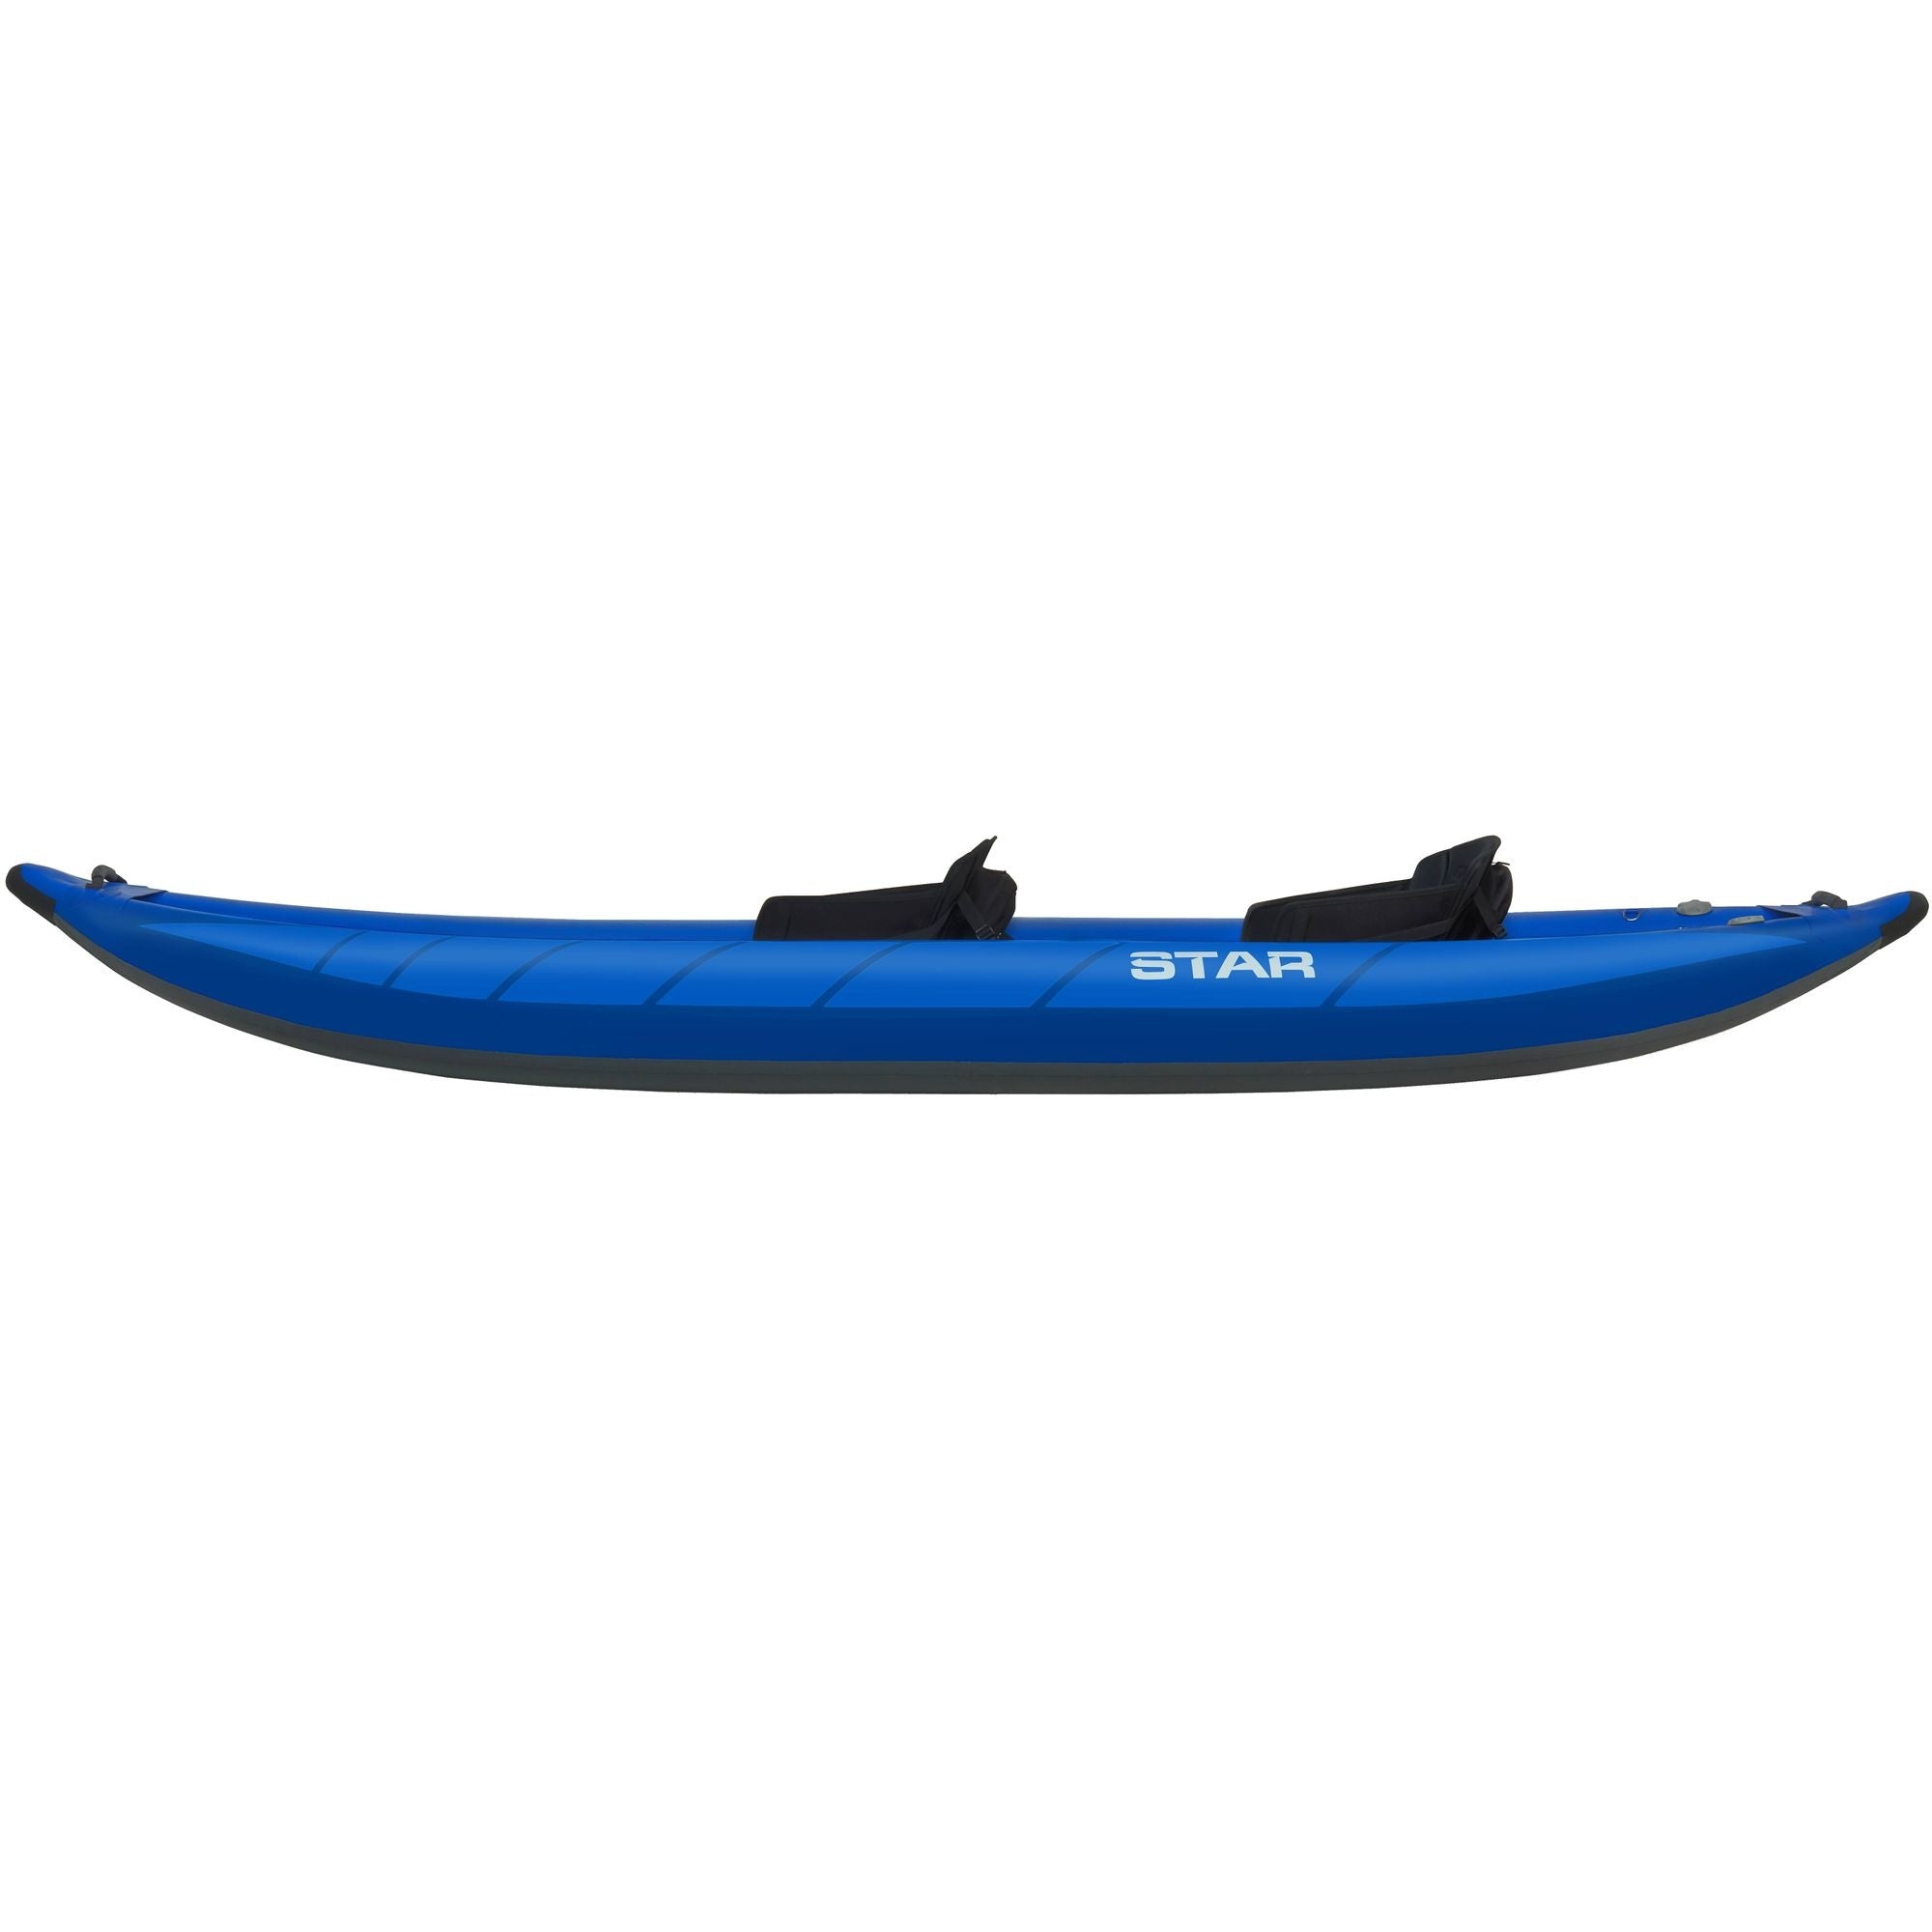 STAR - Raven II Inflatable Kayak